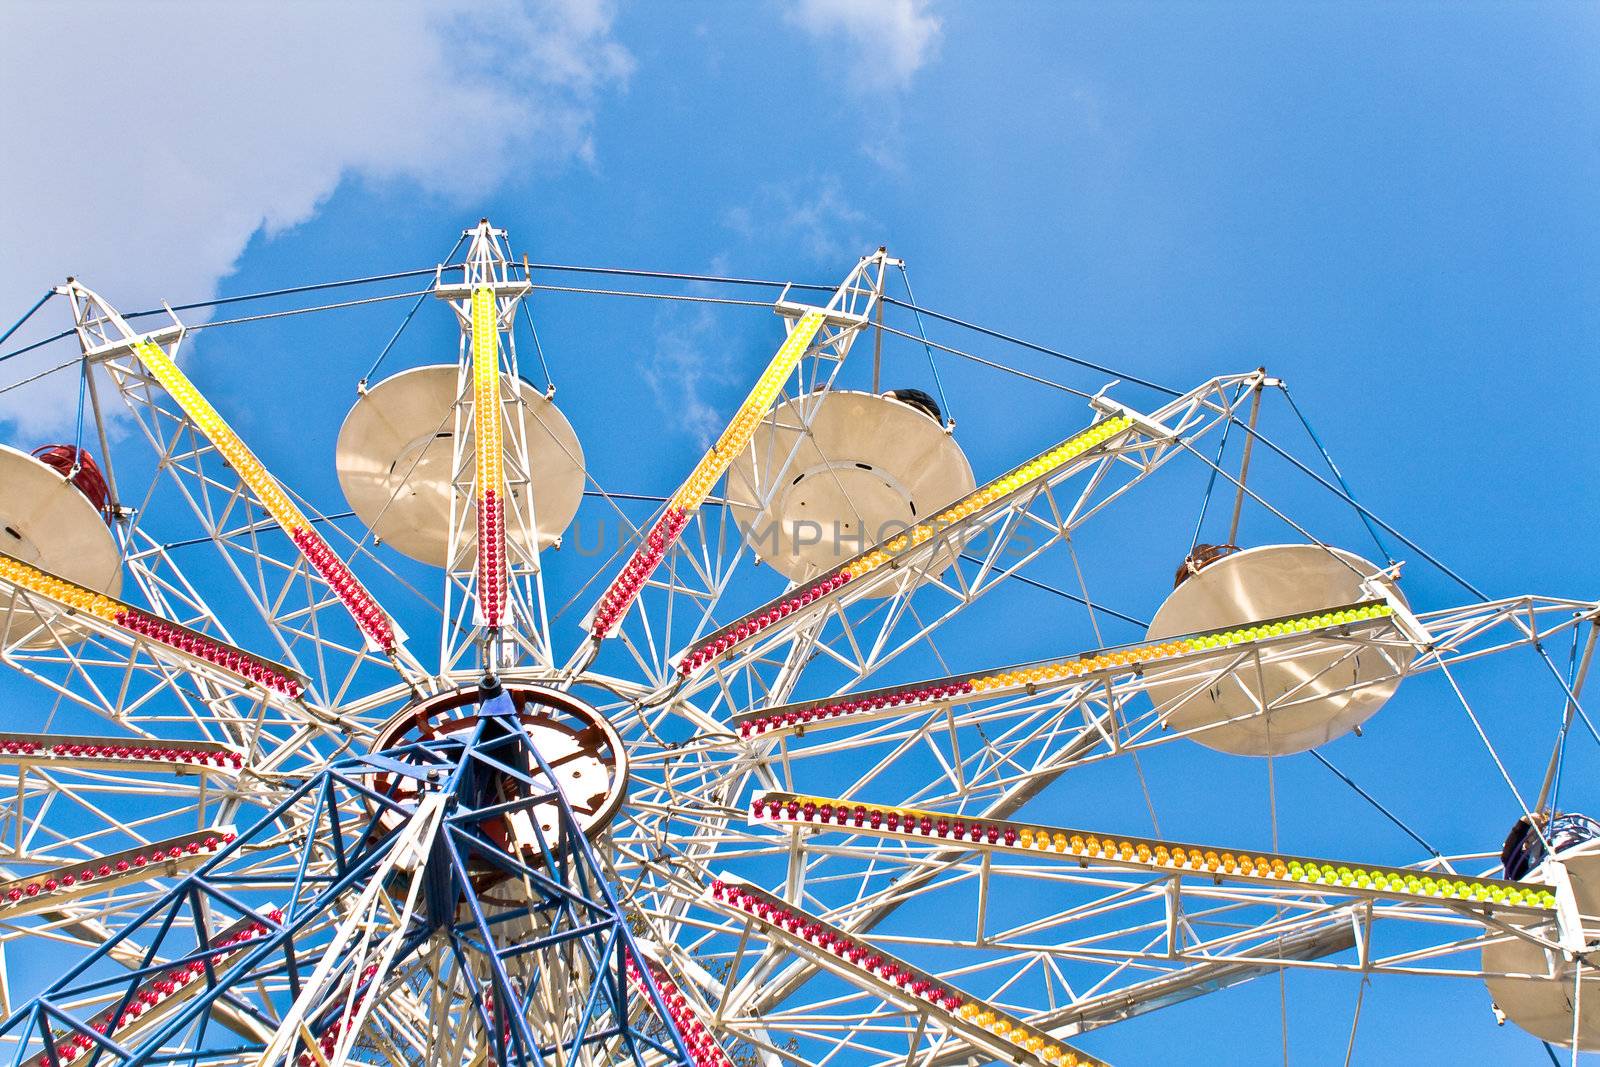 Ferris Wheel on a blue sky by gavran333